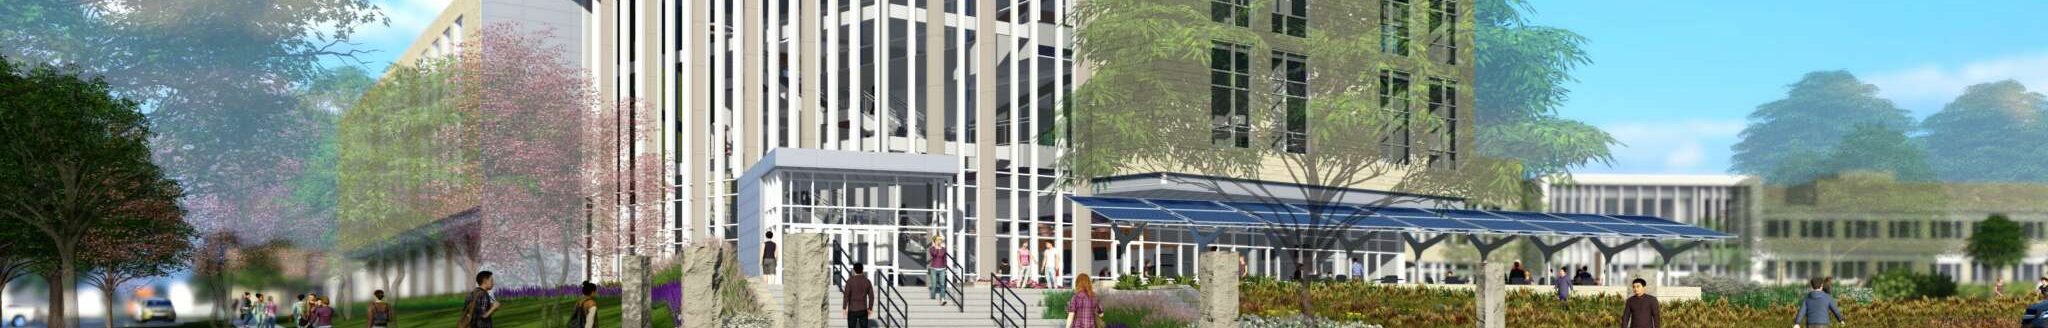 Artist rendering of new center. (Courtesy of Kansas State University.)